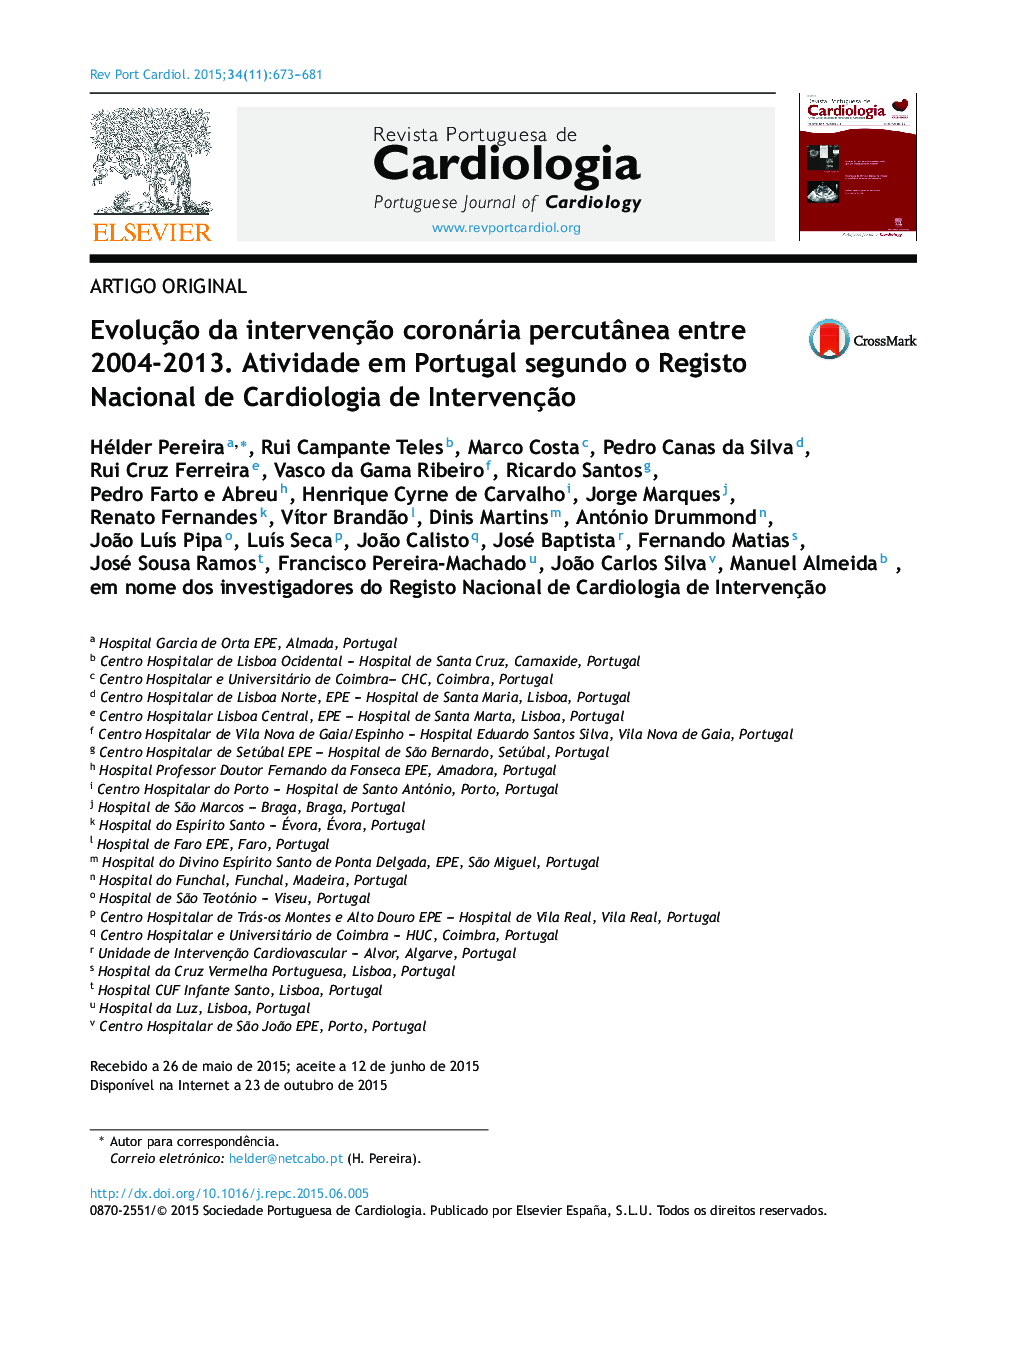 Evolução da intervenção coronária percutânea entre 2004‐2013. Atividade em Portugal segundo o Registo Nacional de Cardiologia de Intervenção